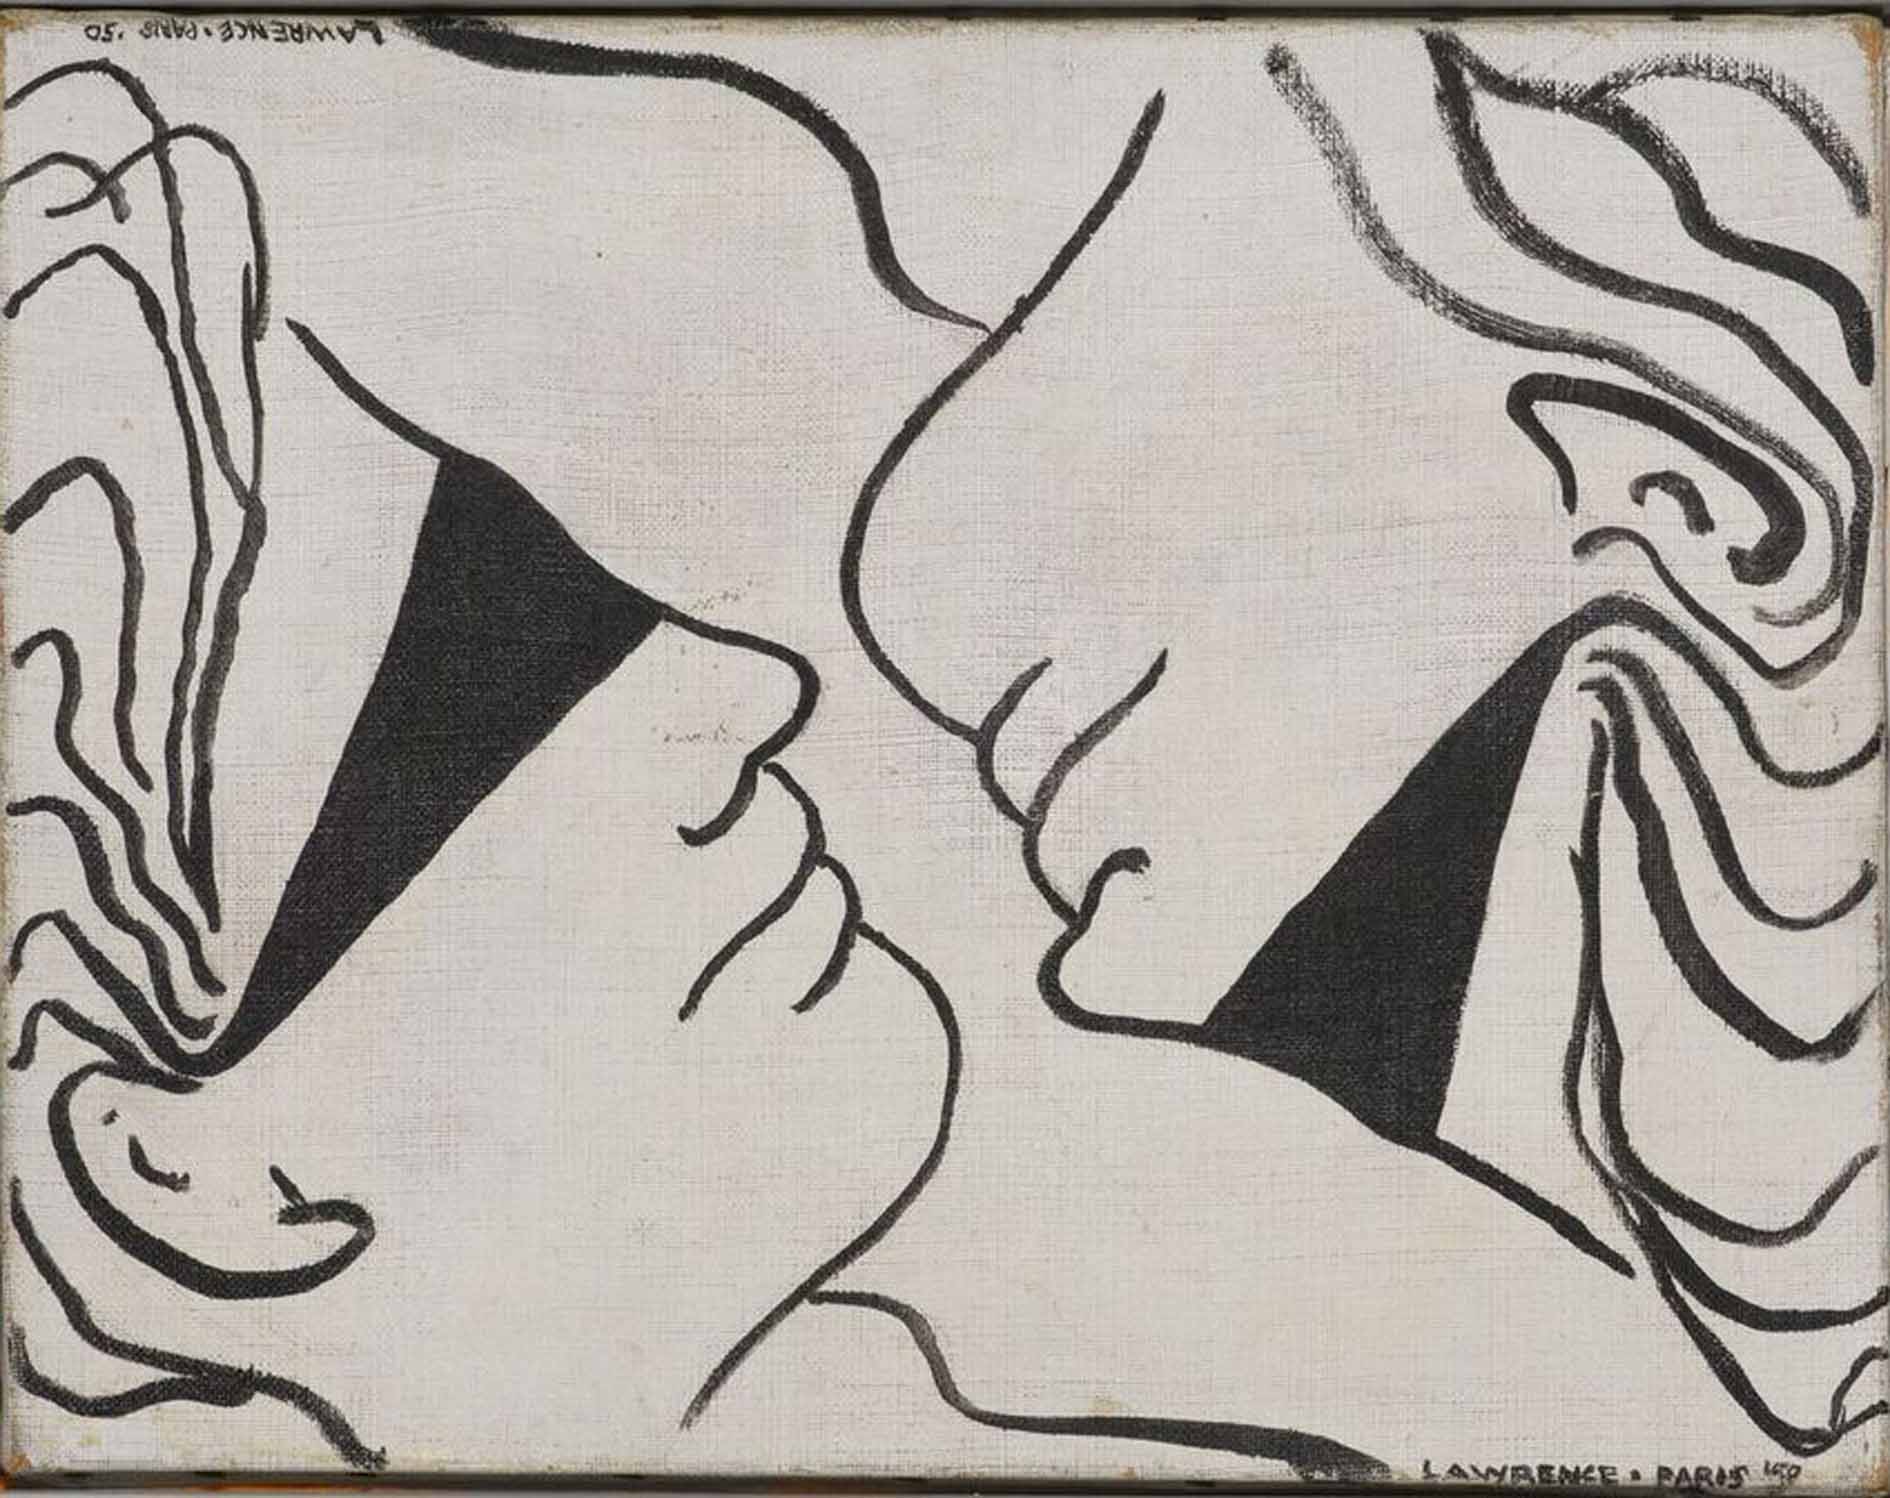 Lawrence Ferlinghetti, Deux, 1950. Collezione dell’artista, San Francisco